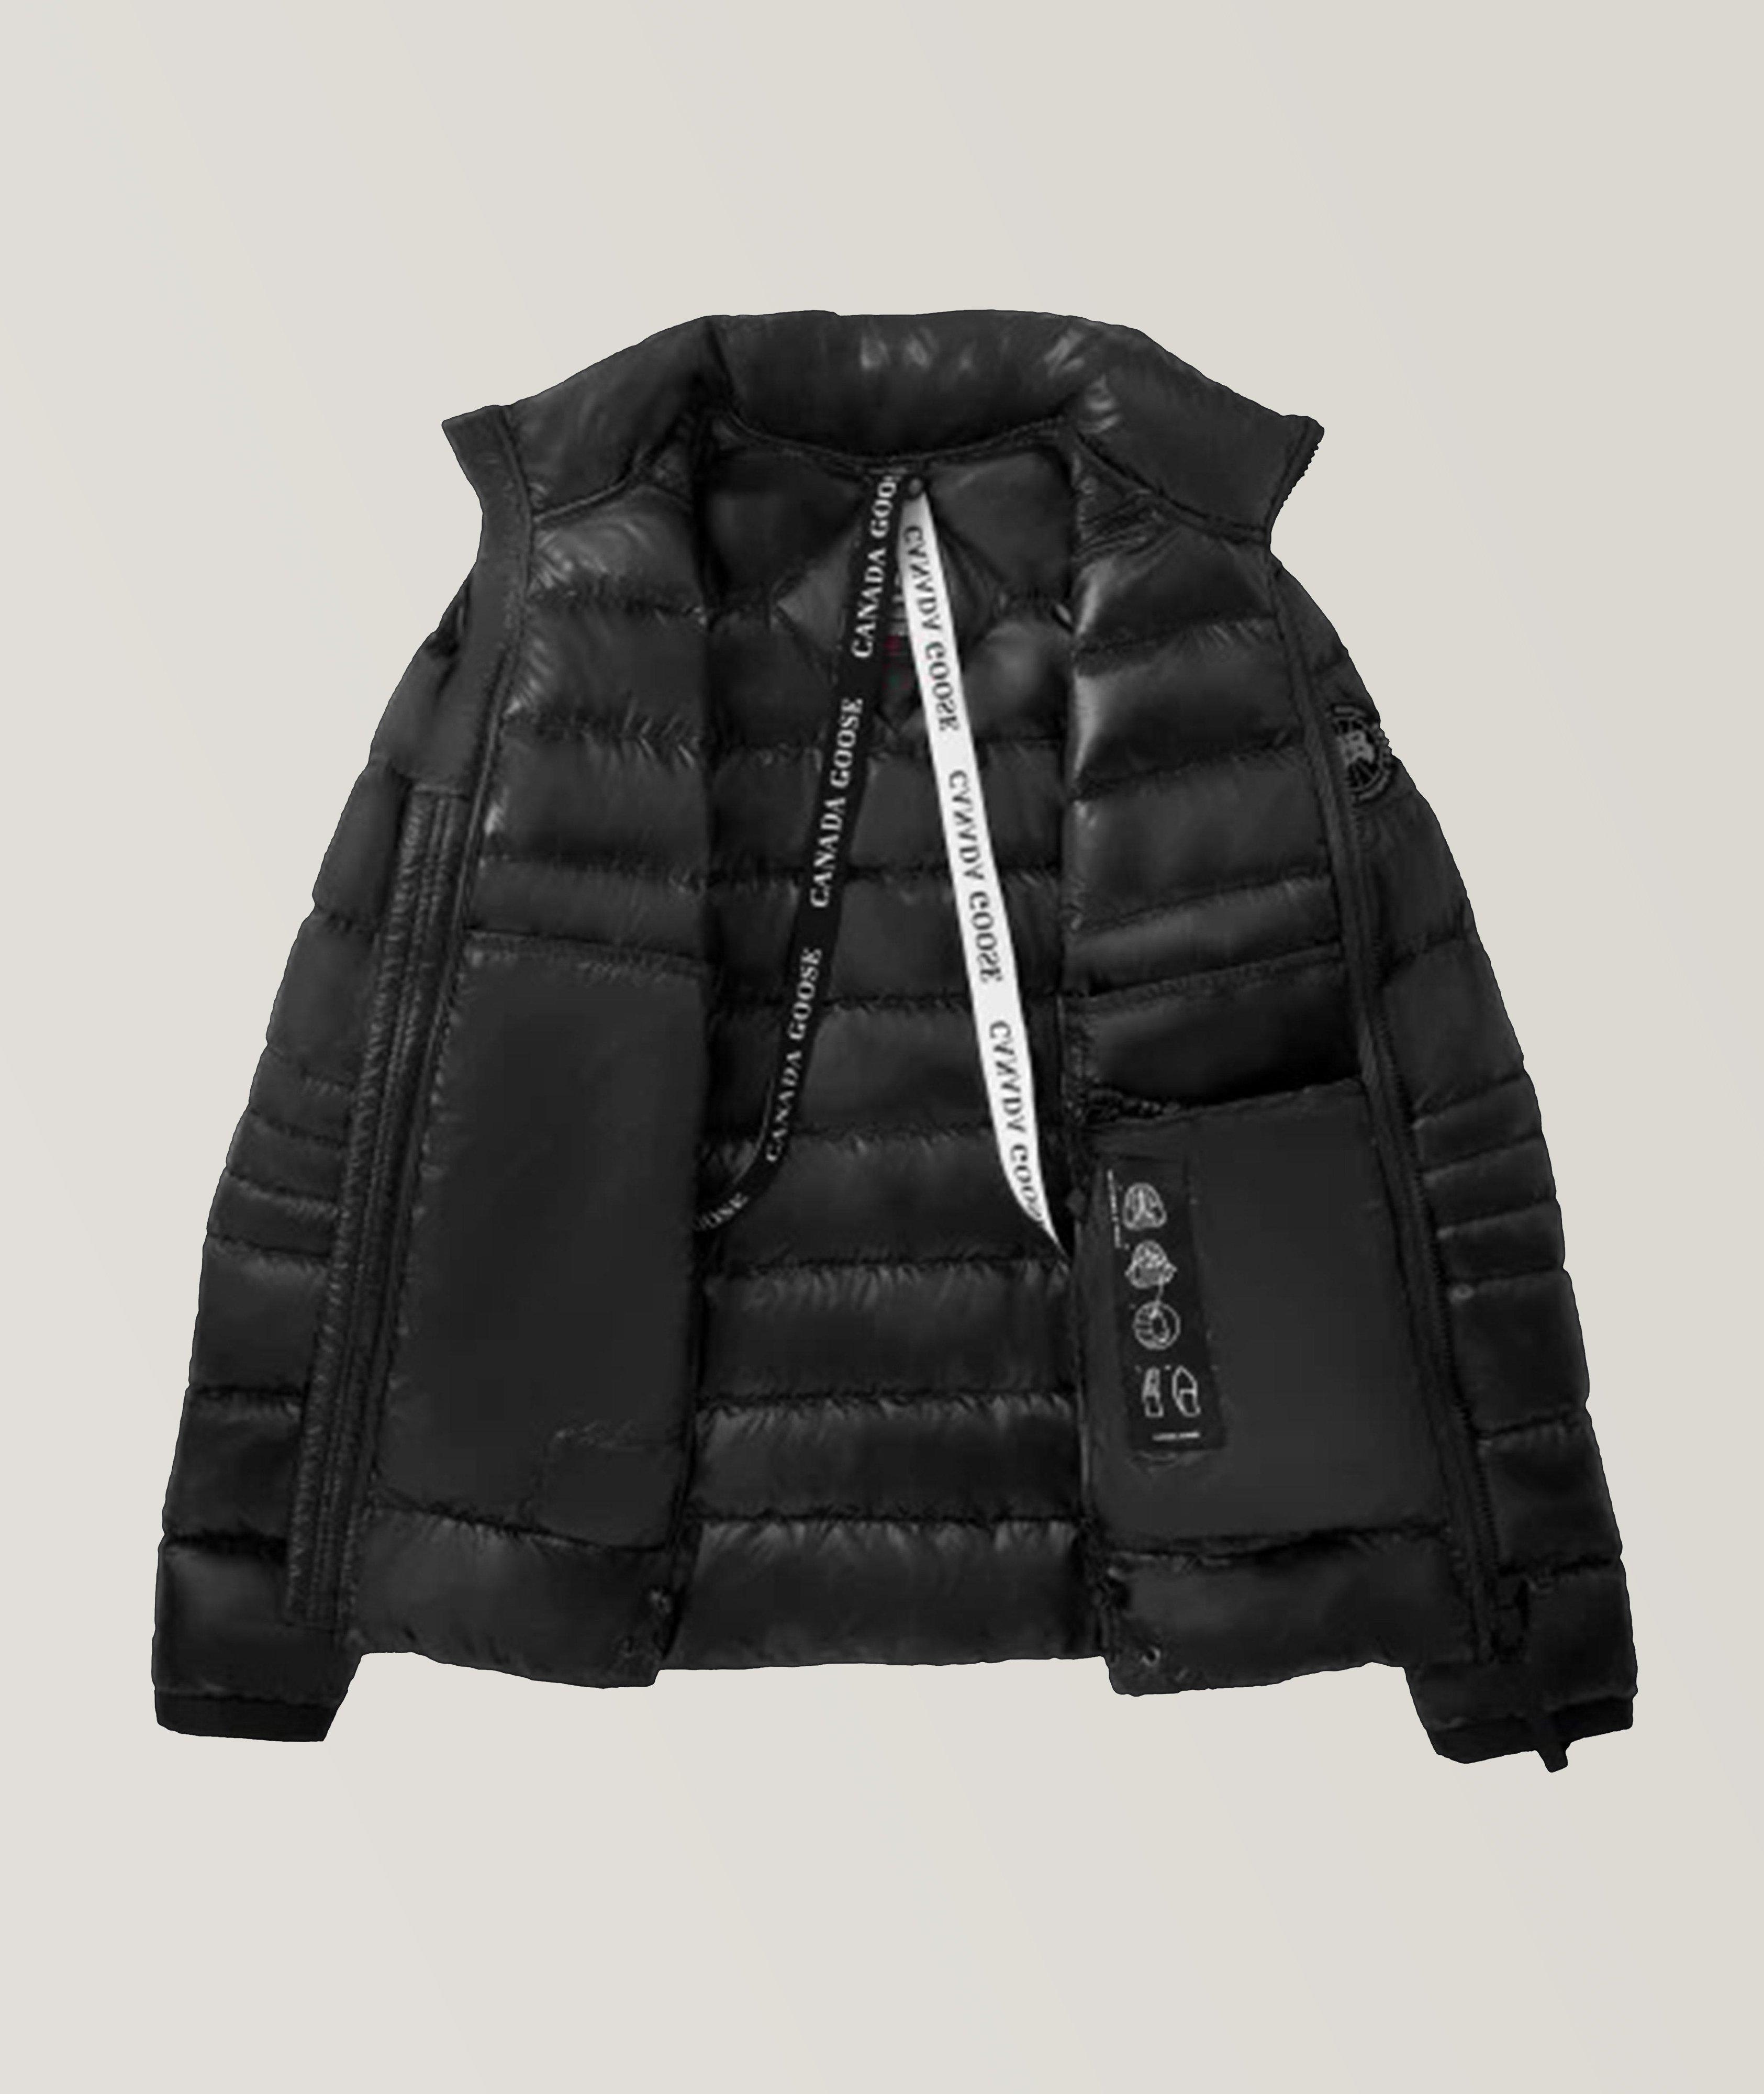 Manteau de duvet Crofton, collection Black Label image 1